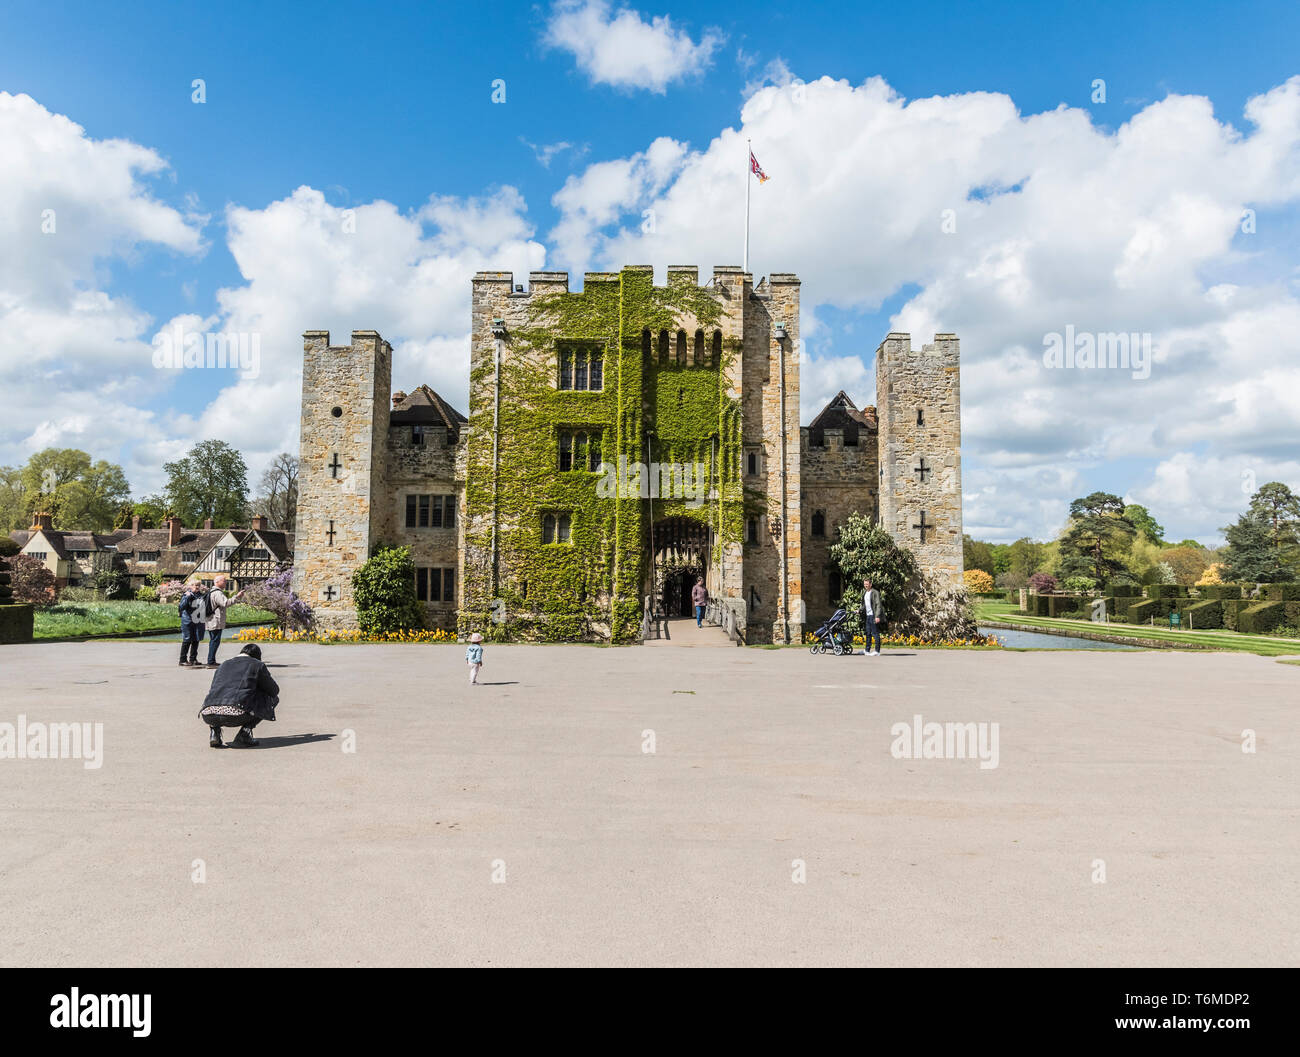 La destination touristique populaire de Hever Castle et motifs dans Kent, près de Saint-hippolyte, la maison ancestrale d'Anne Boleyn, seconde épouse du roi Henri VIII Banque D'Images